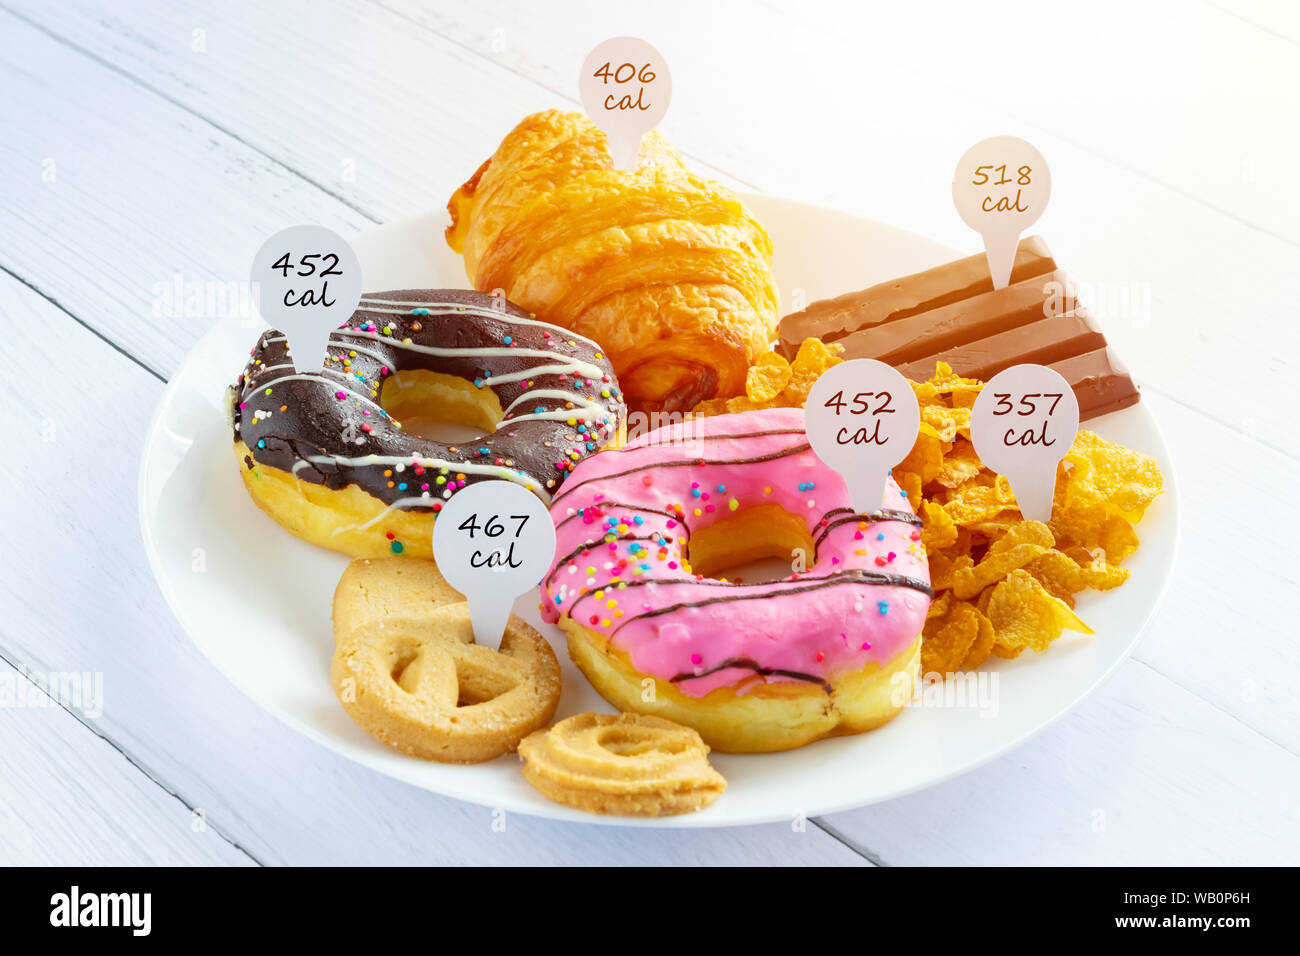 Kalorien zählen und die Lebensmittelüberwachung Konzept. Donut, Croissants, Schokolade und Kekse mit Beschriftung von der Anzahl der Kalorien für Kalorien messen Stockfoto